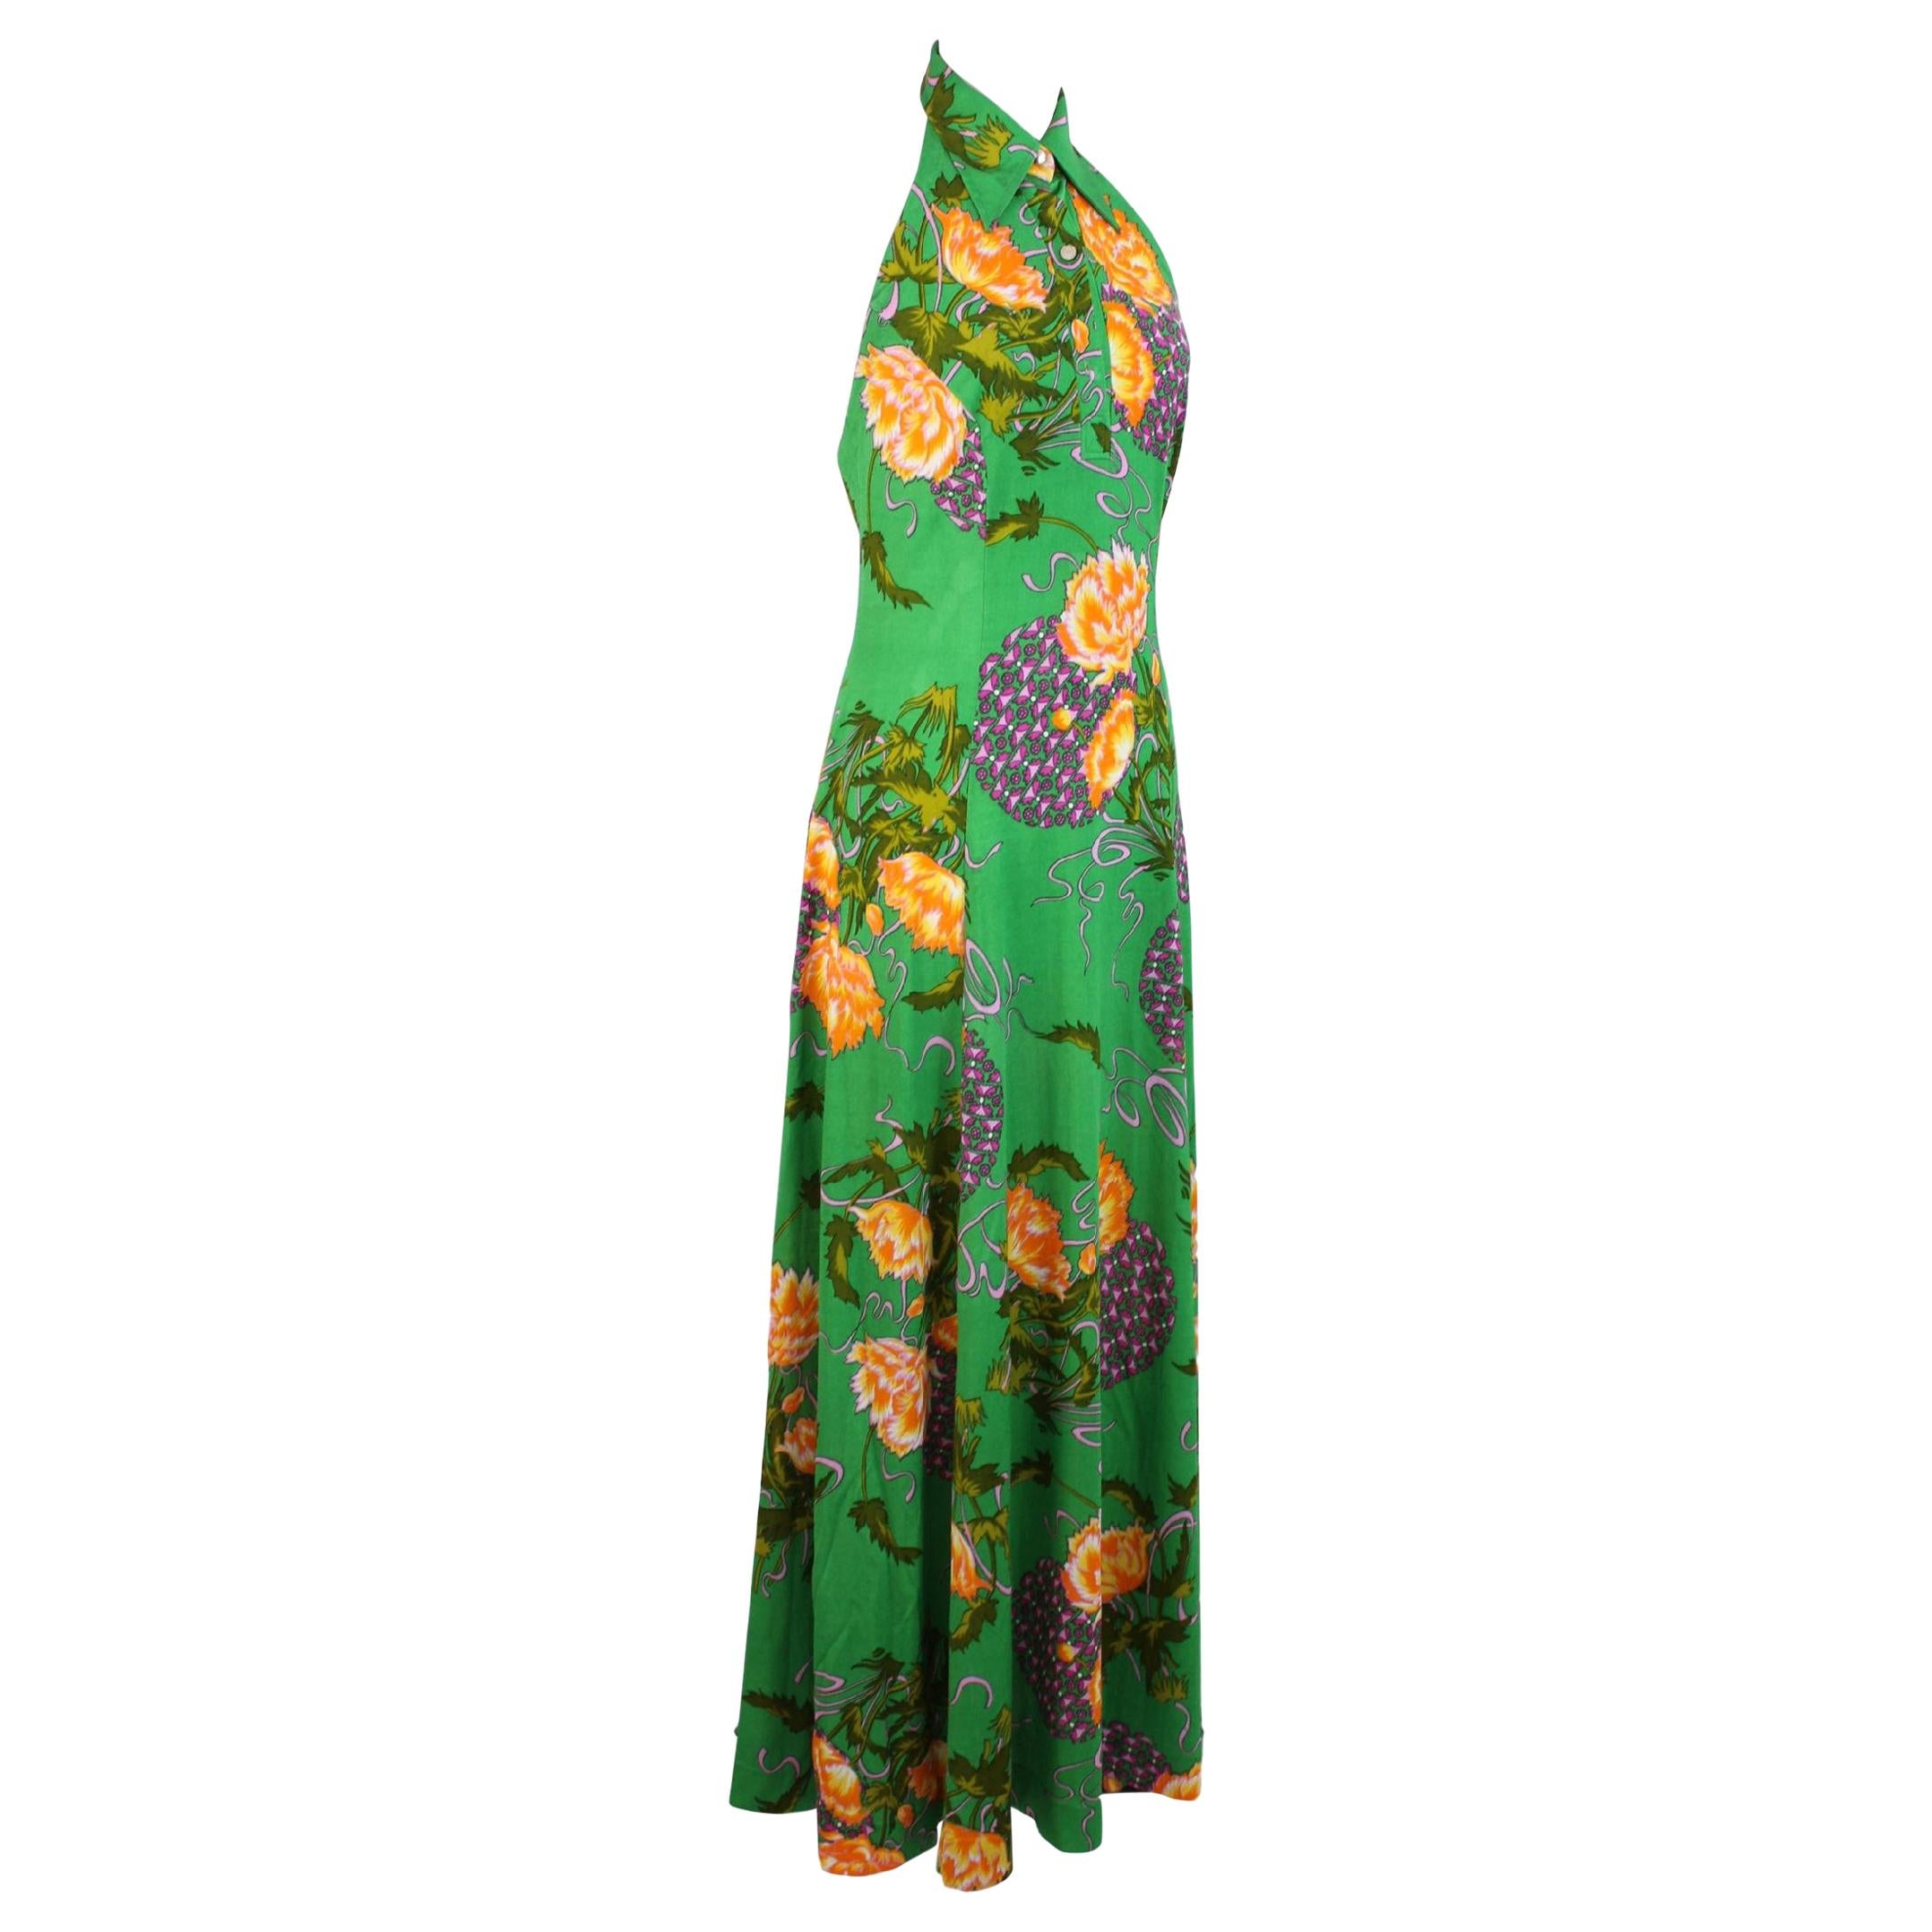 Vintage Floral Party Cocktail amerikanischer Ausschnitt langes grünes handgefertigtes Kleid 1980er